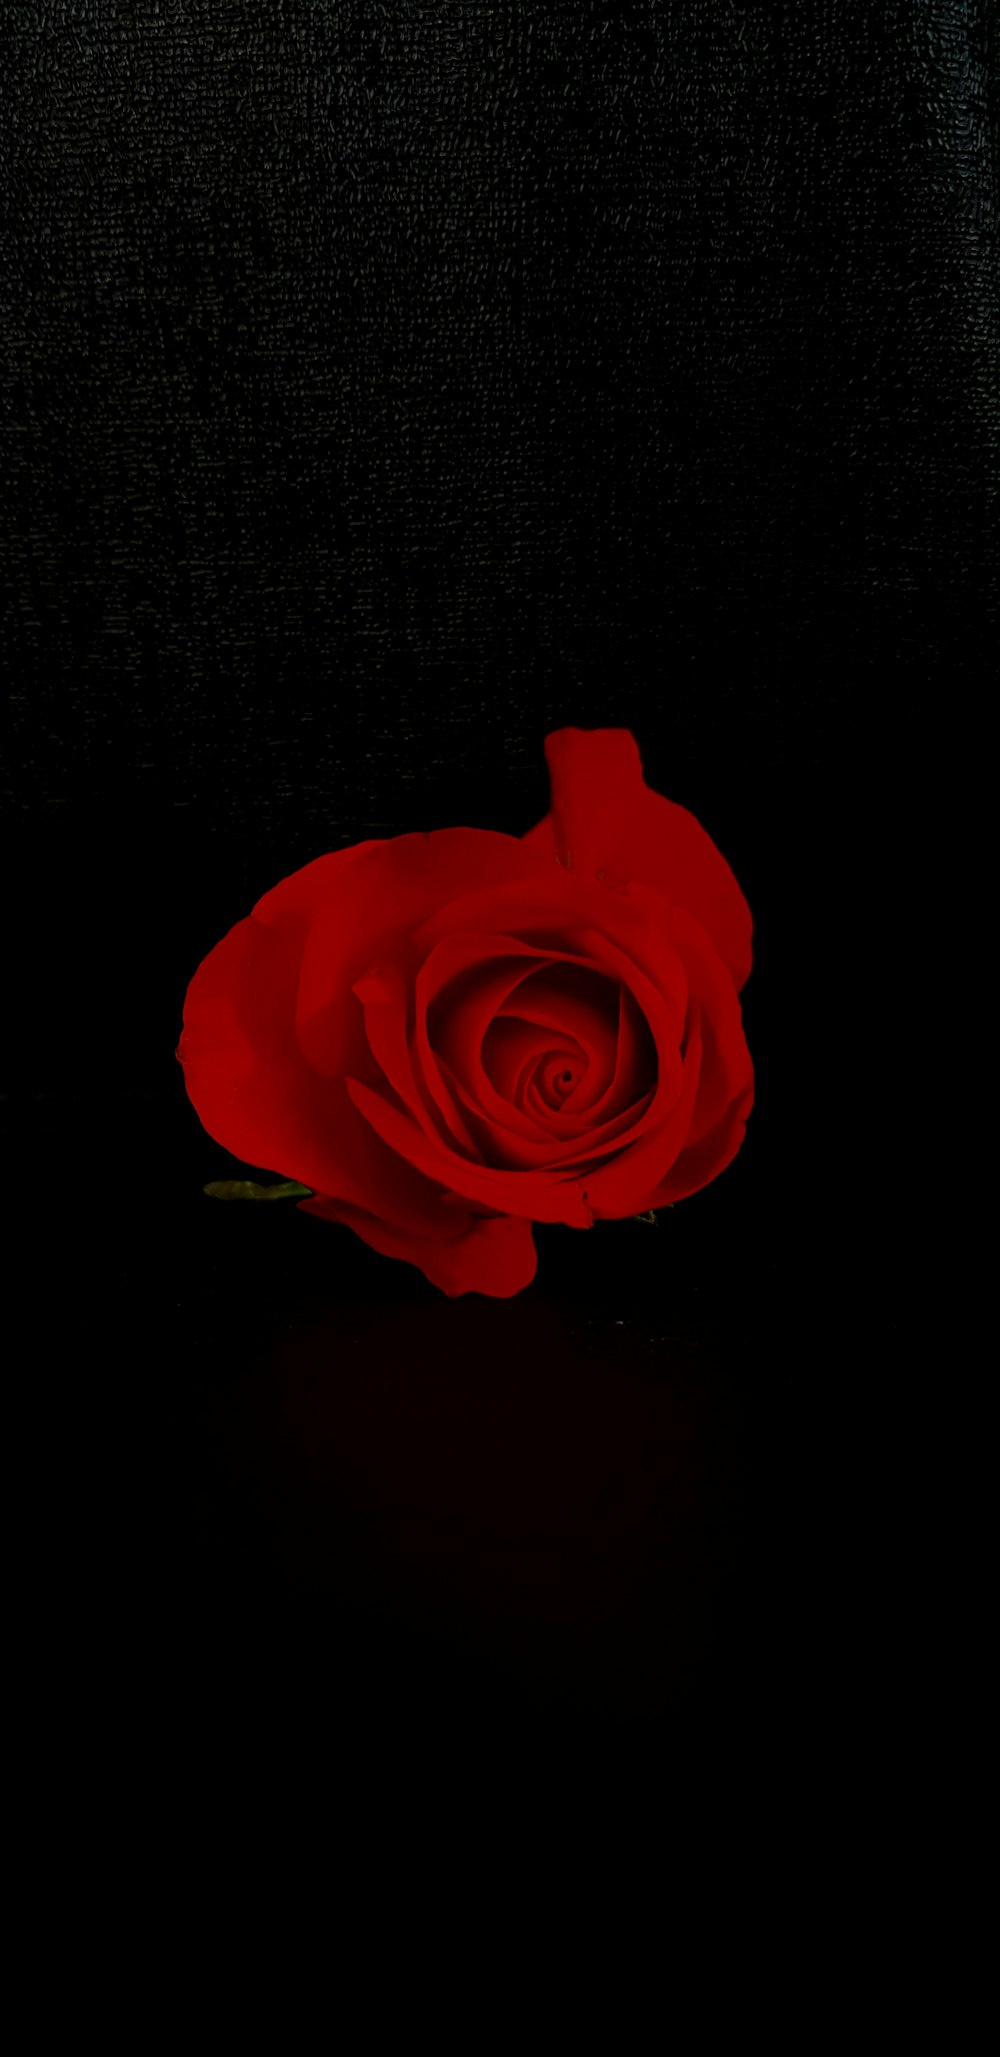 fiore di rosa rossa su sfondo nero